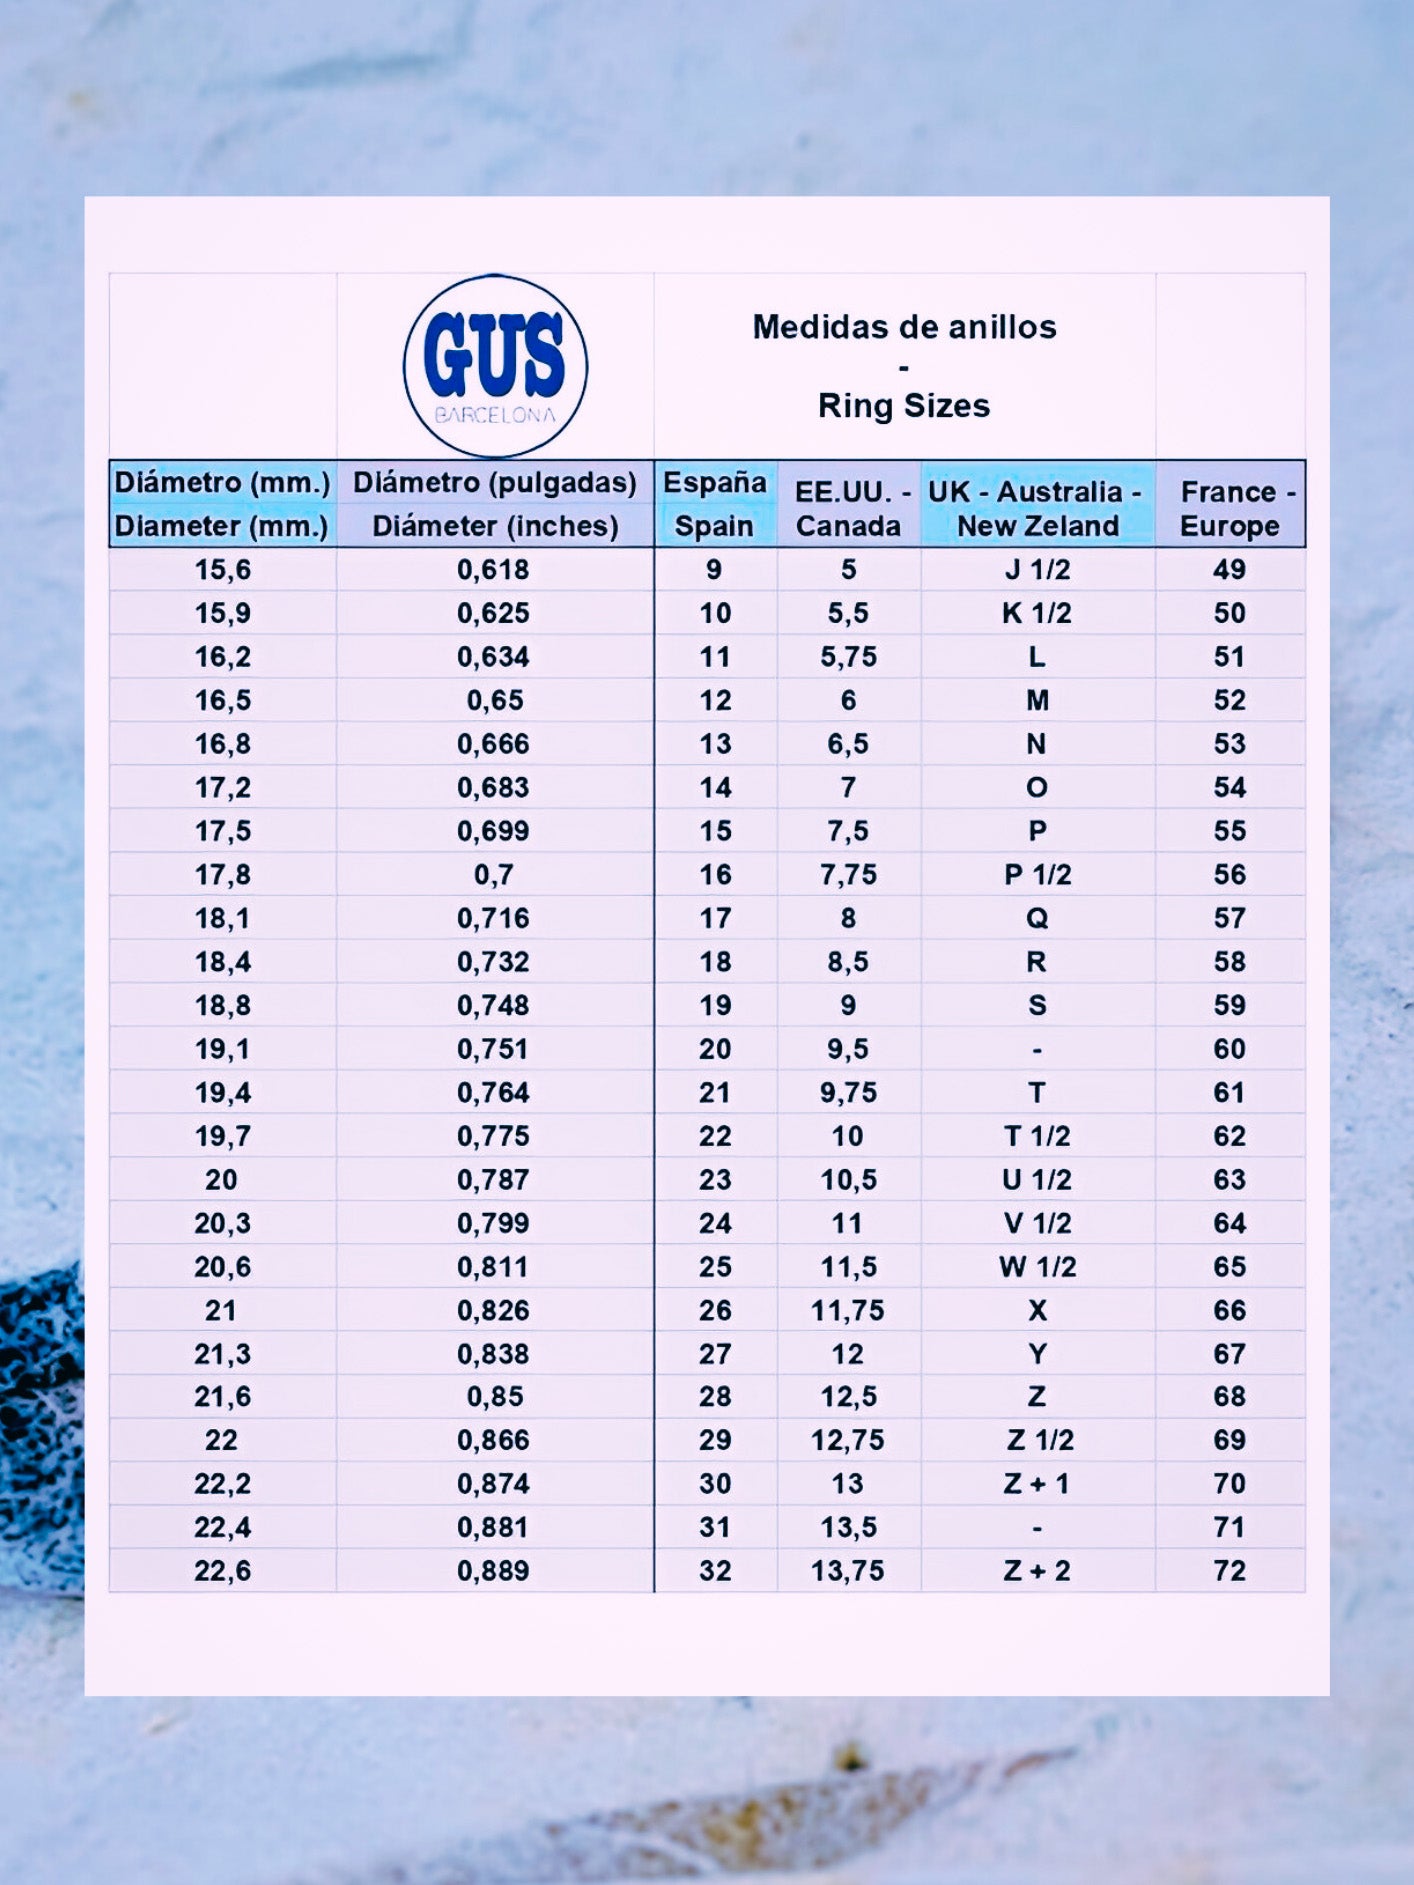 Tabla de medidas de anillos alianzas Gus. Equivalencias medidas USA, España, Francia, Europa.